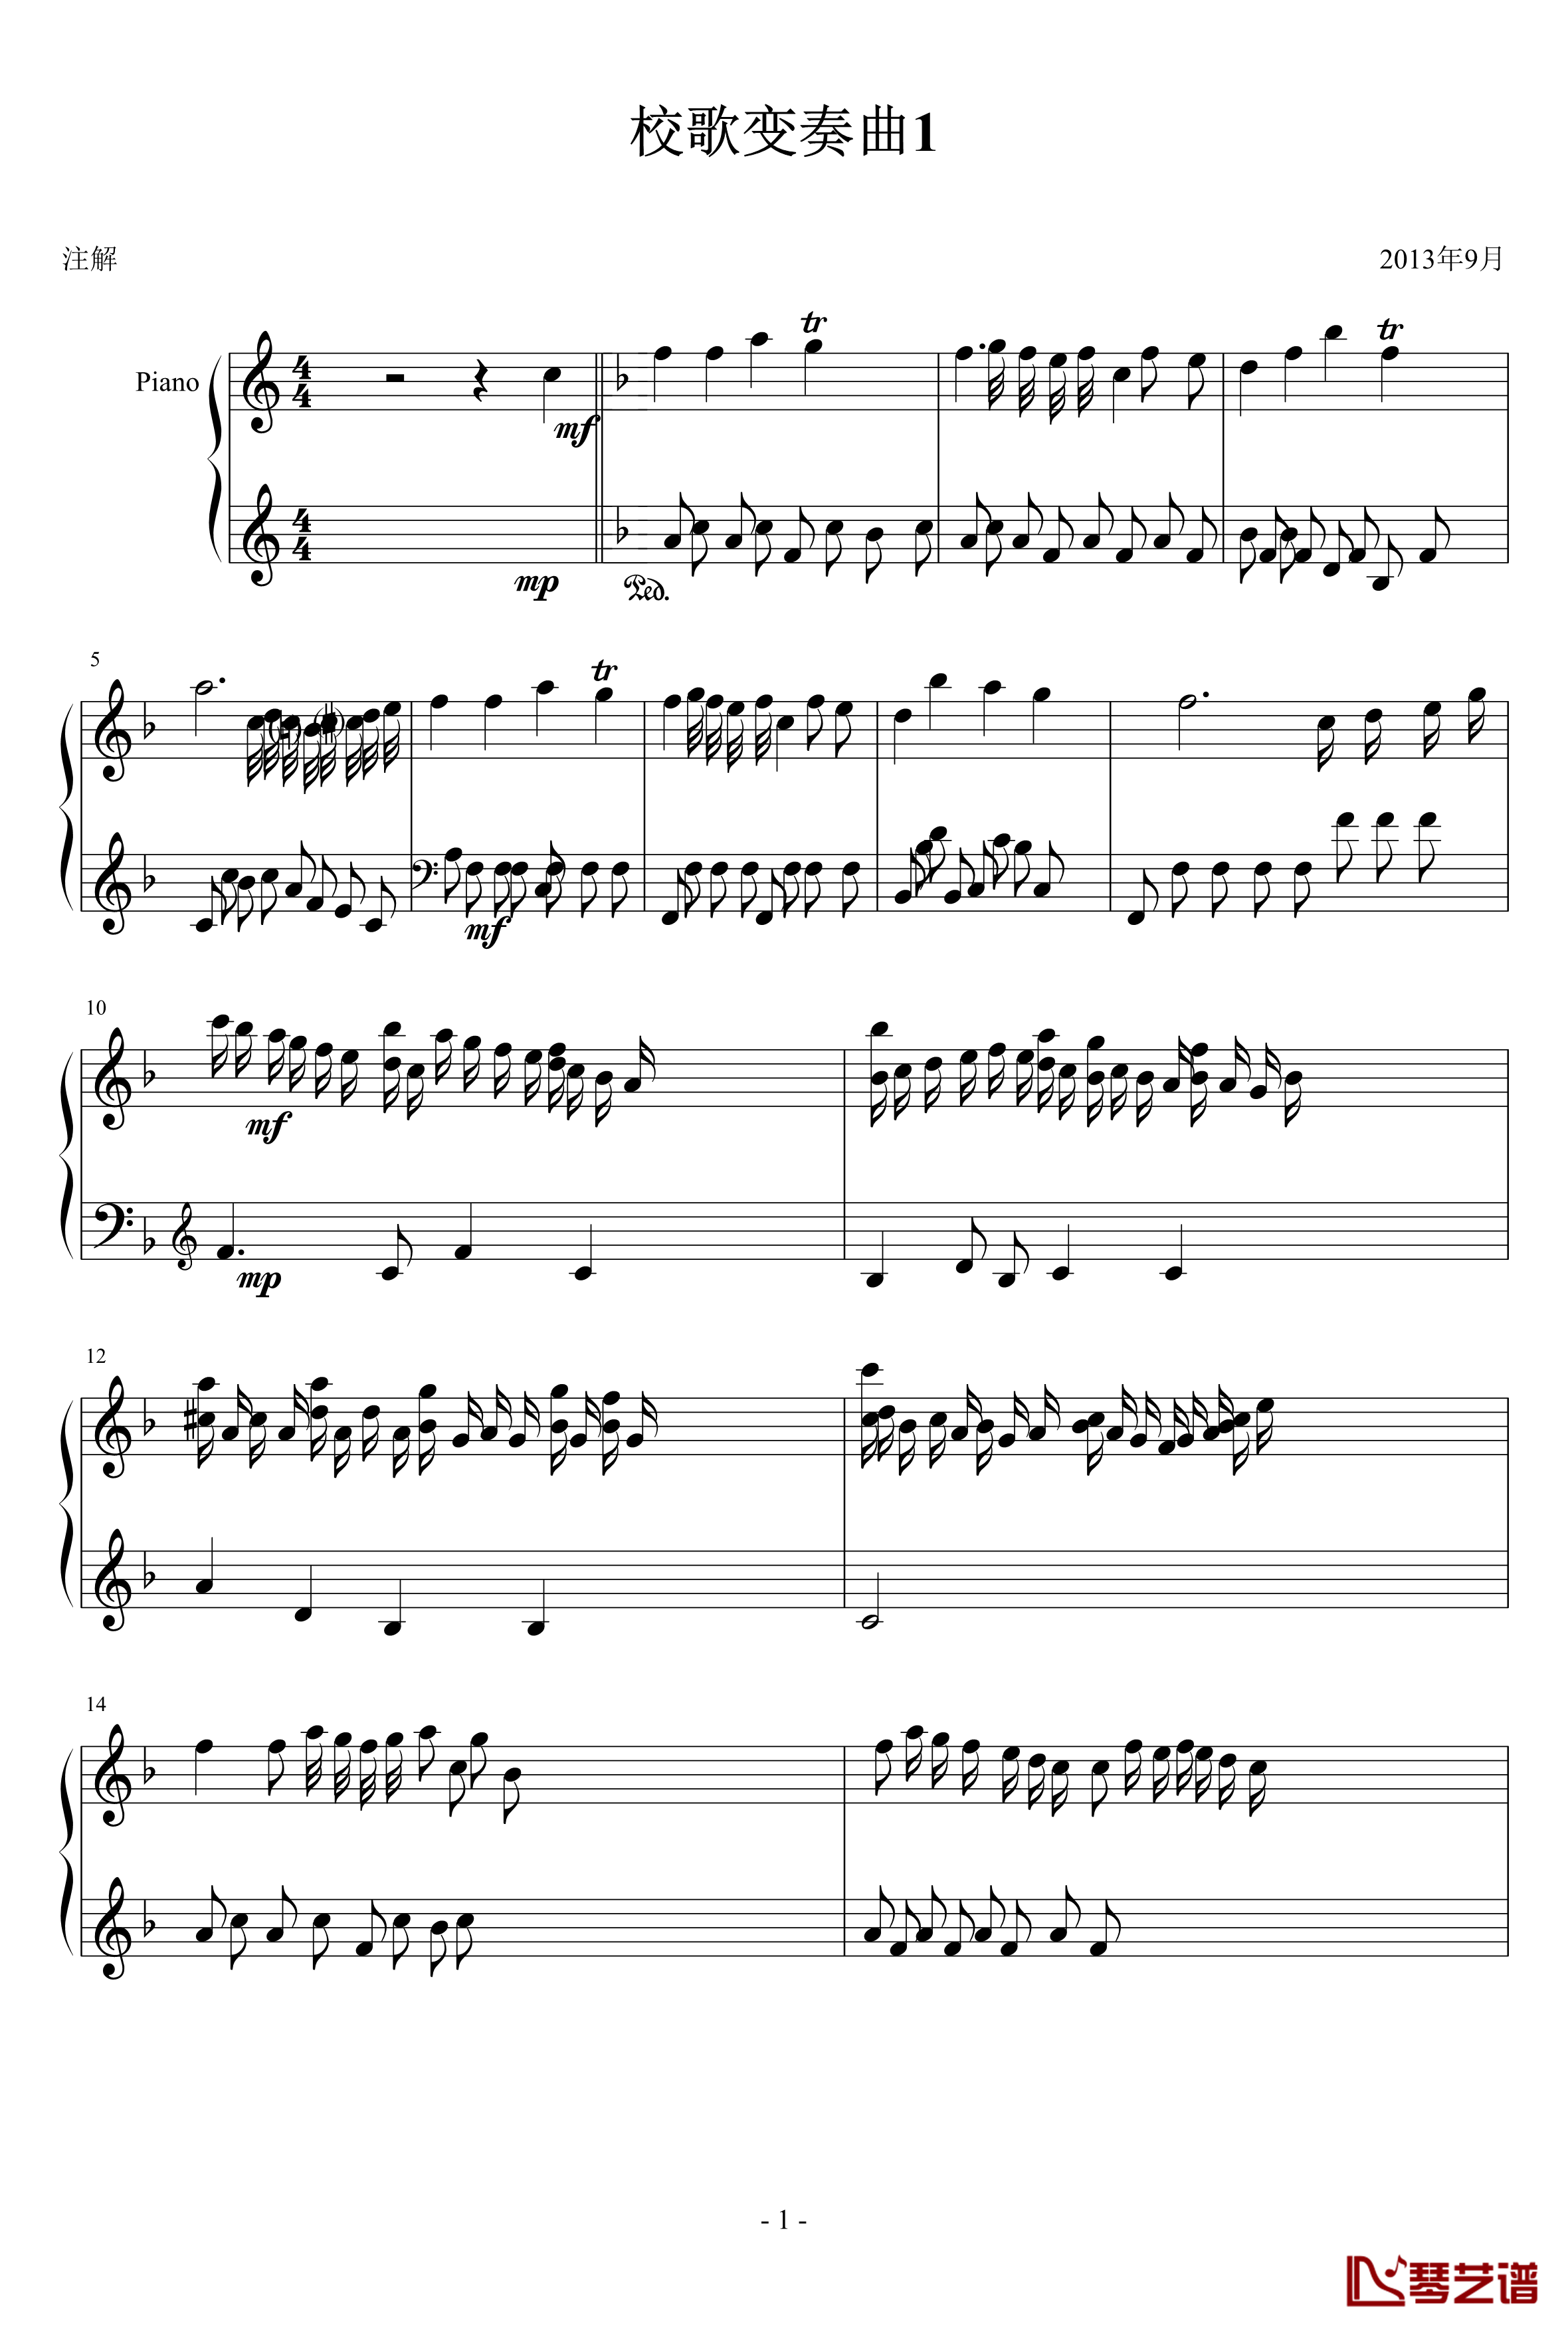 校歌变奏曲1钢琴谱-十分古典的一曲-琴欲